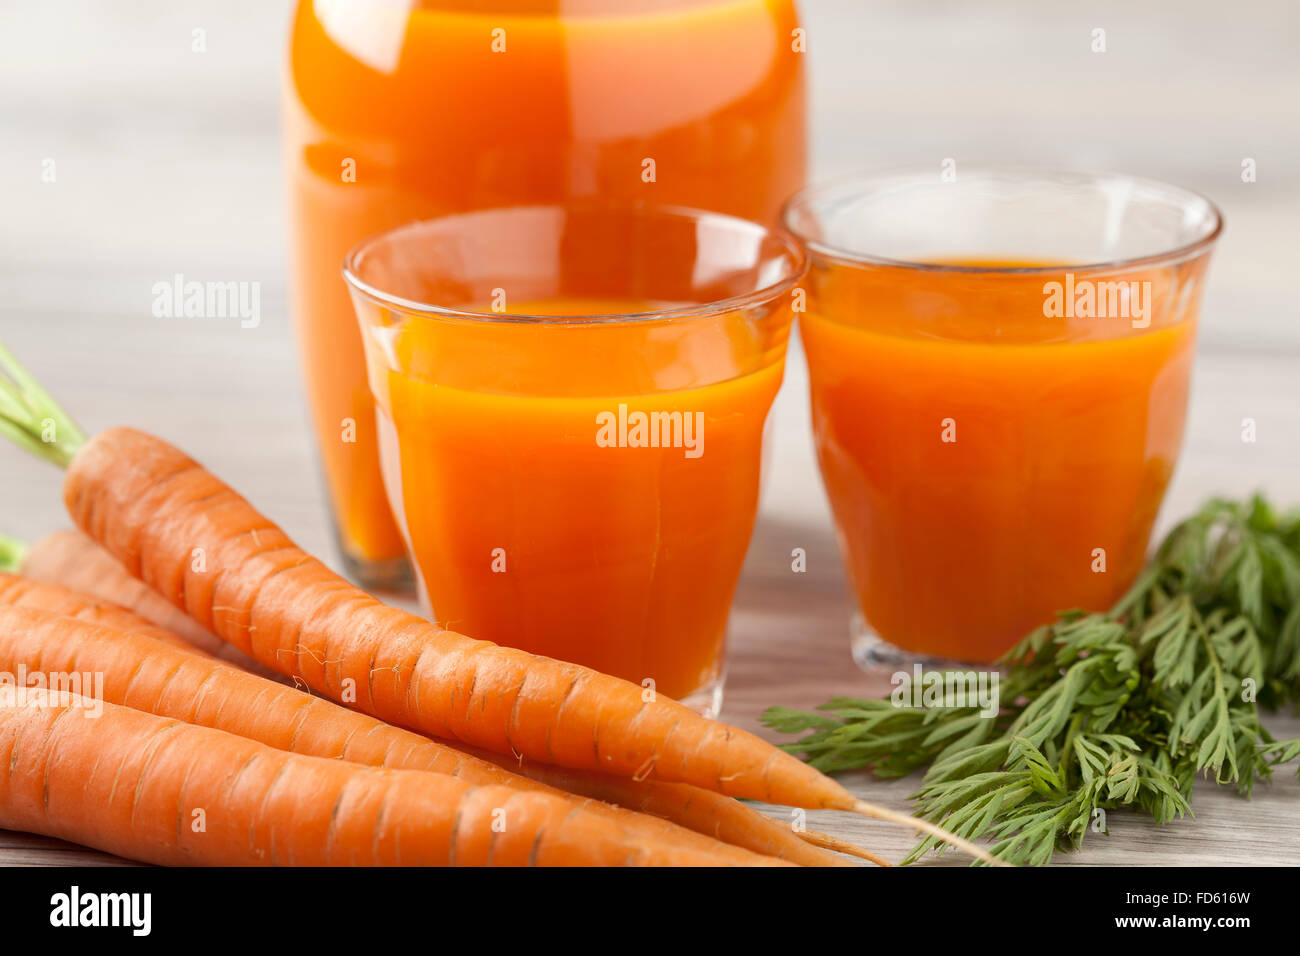 Le jus de carotte orange Banque D'Images